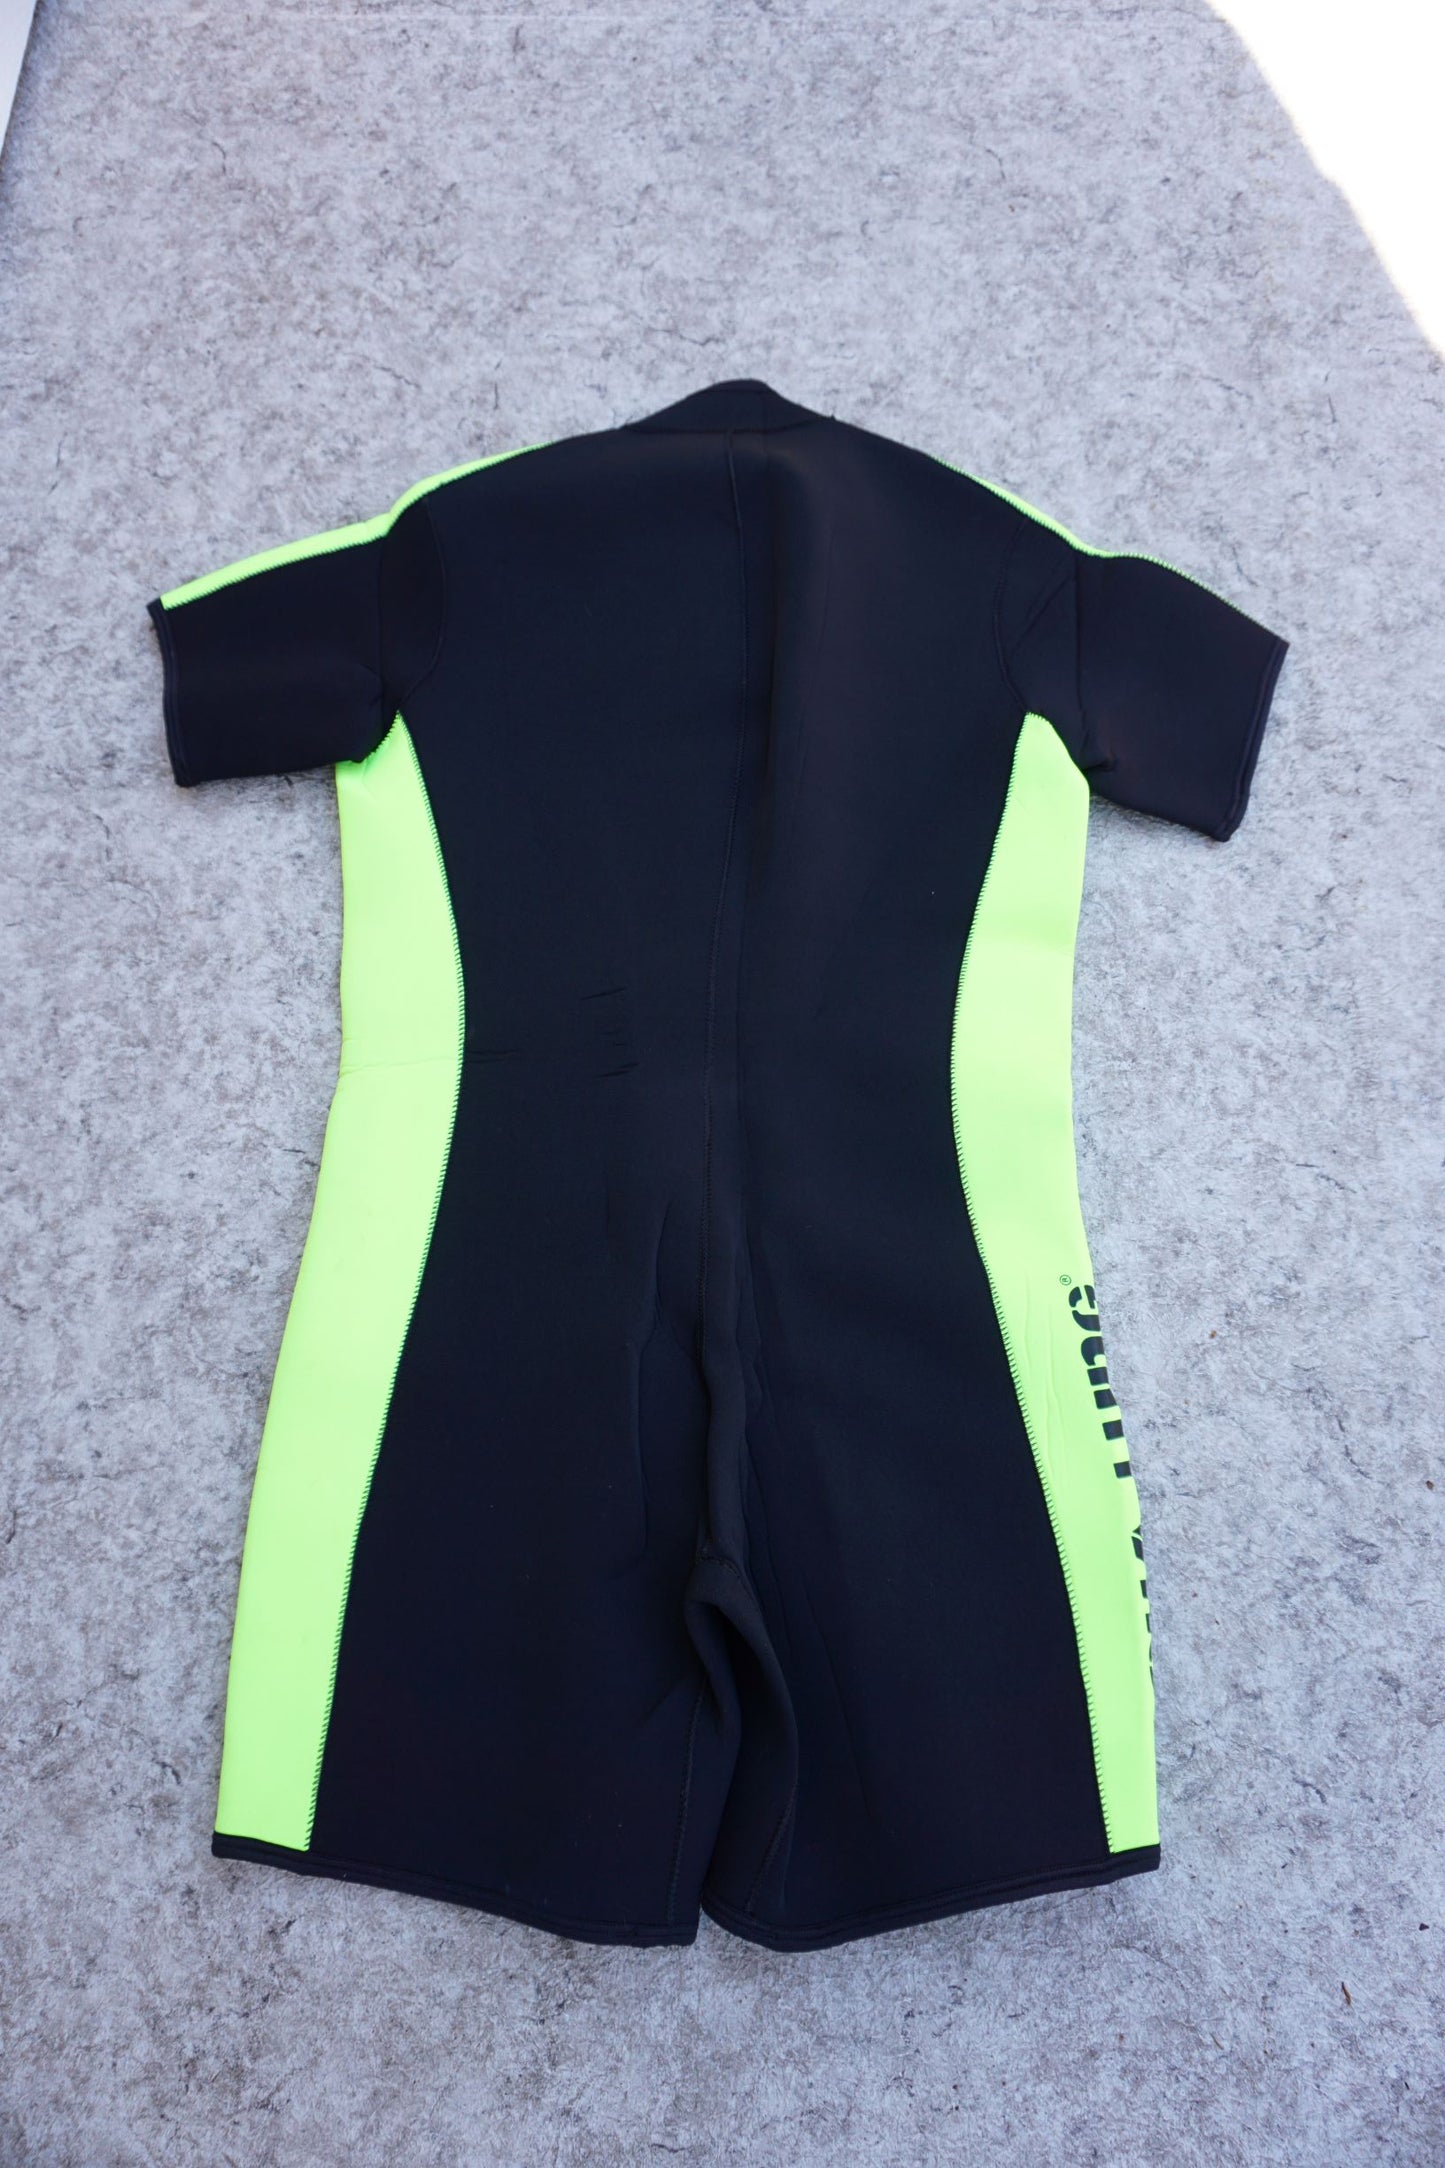 Wetsuit Men's Size XX Large Aqua Lung Dive Surf Neoprene 4-5 mm Black Lime